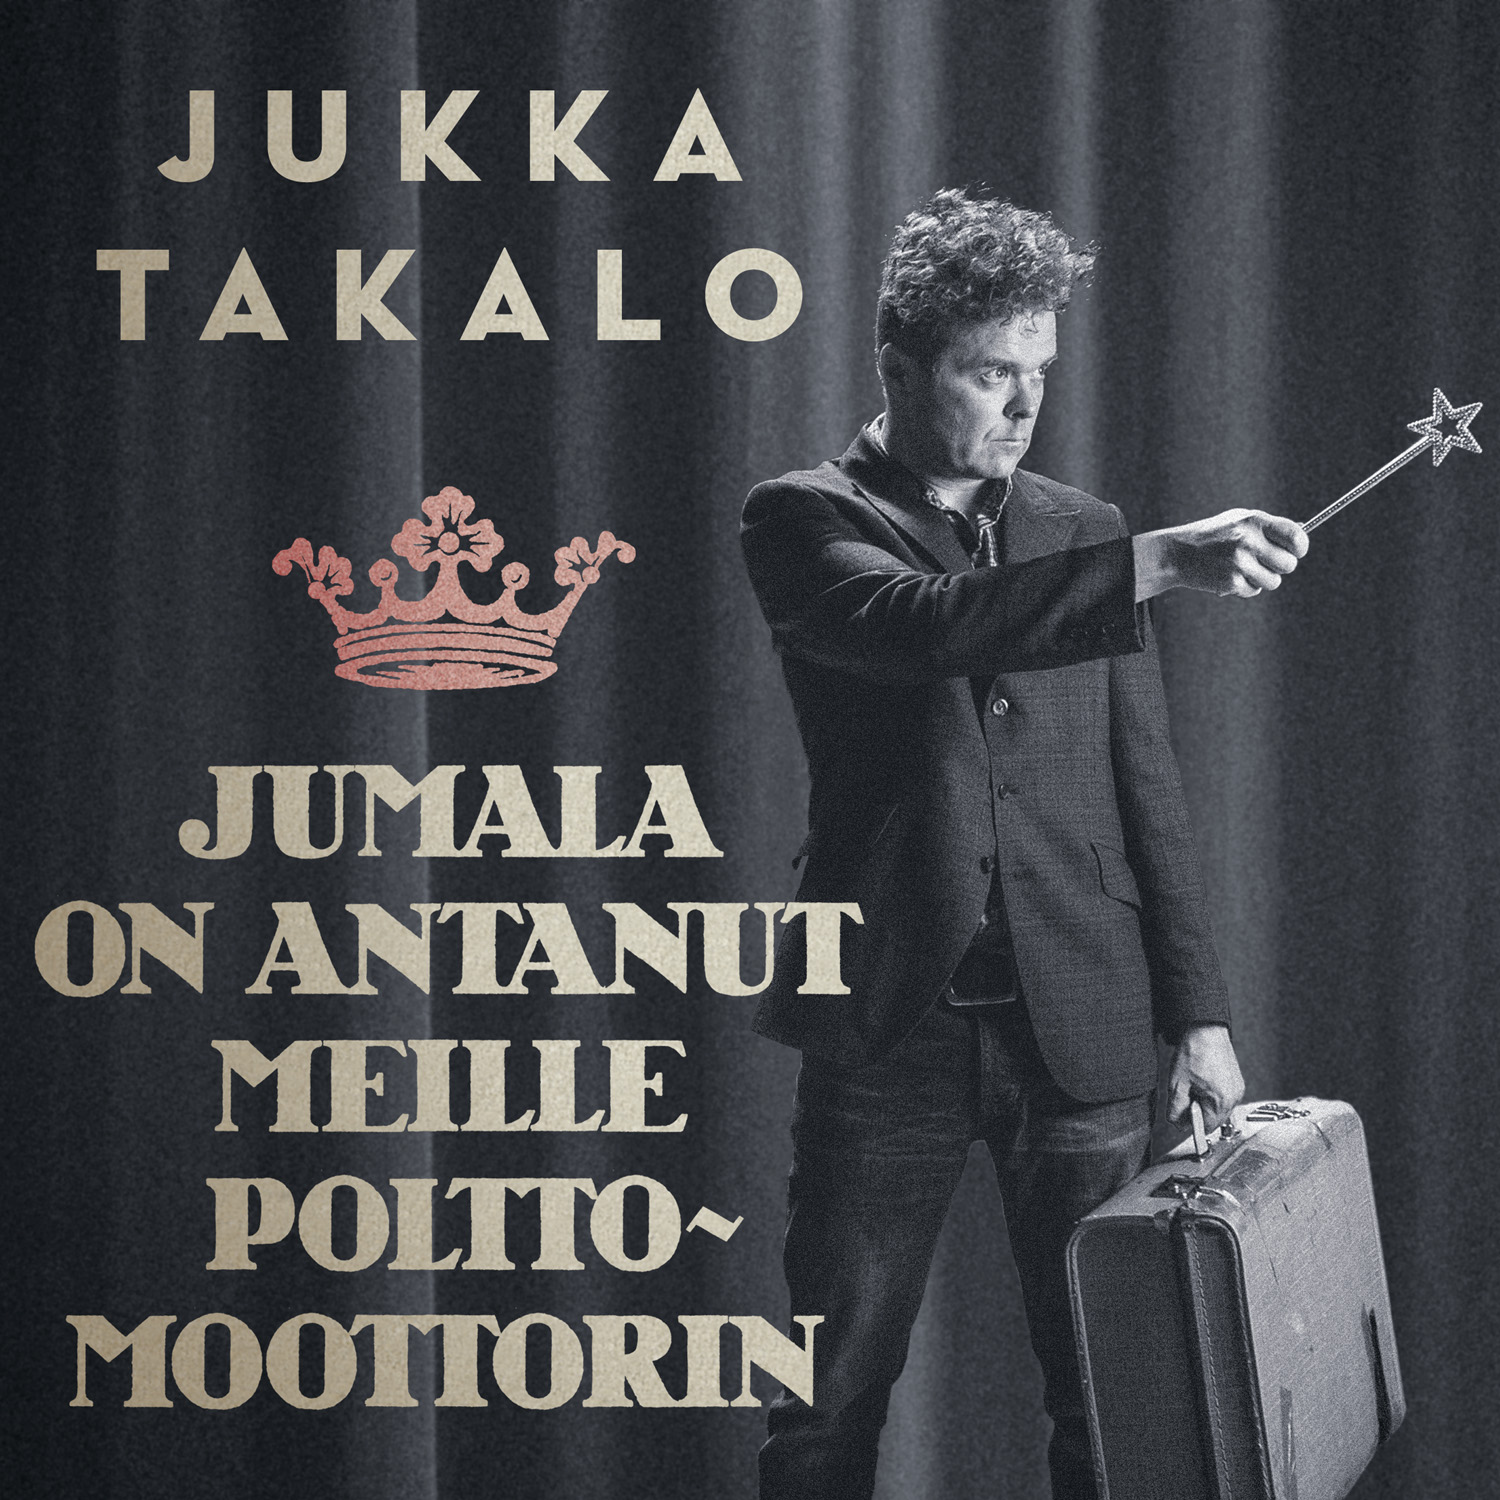 Jukka Takalon uusi single 'Jumala on antanut meille polttomoottorin' kyseenalaistaa oletettuja totuuksia